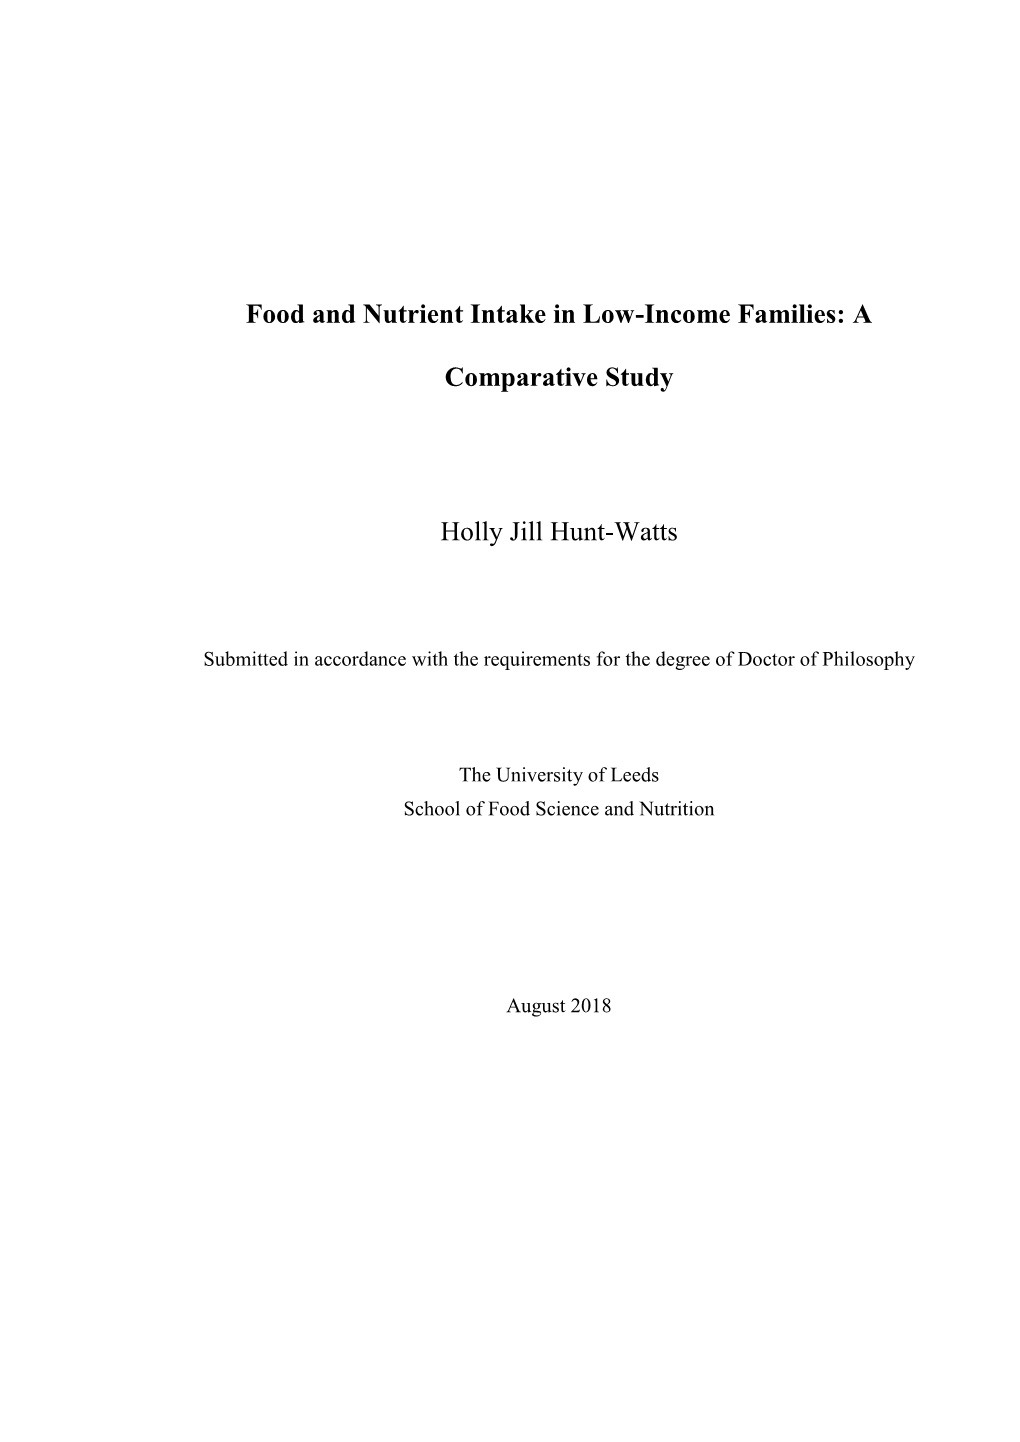 A Comparative Study Holly Jill Hunt-Watts